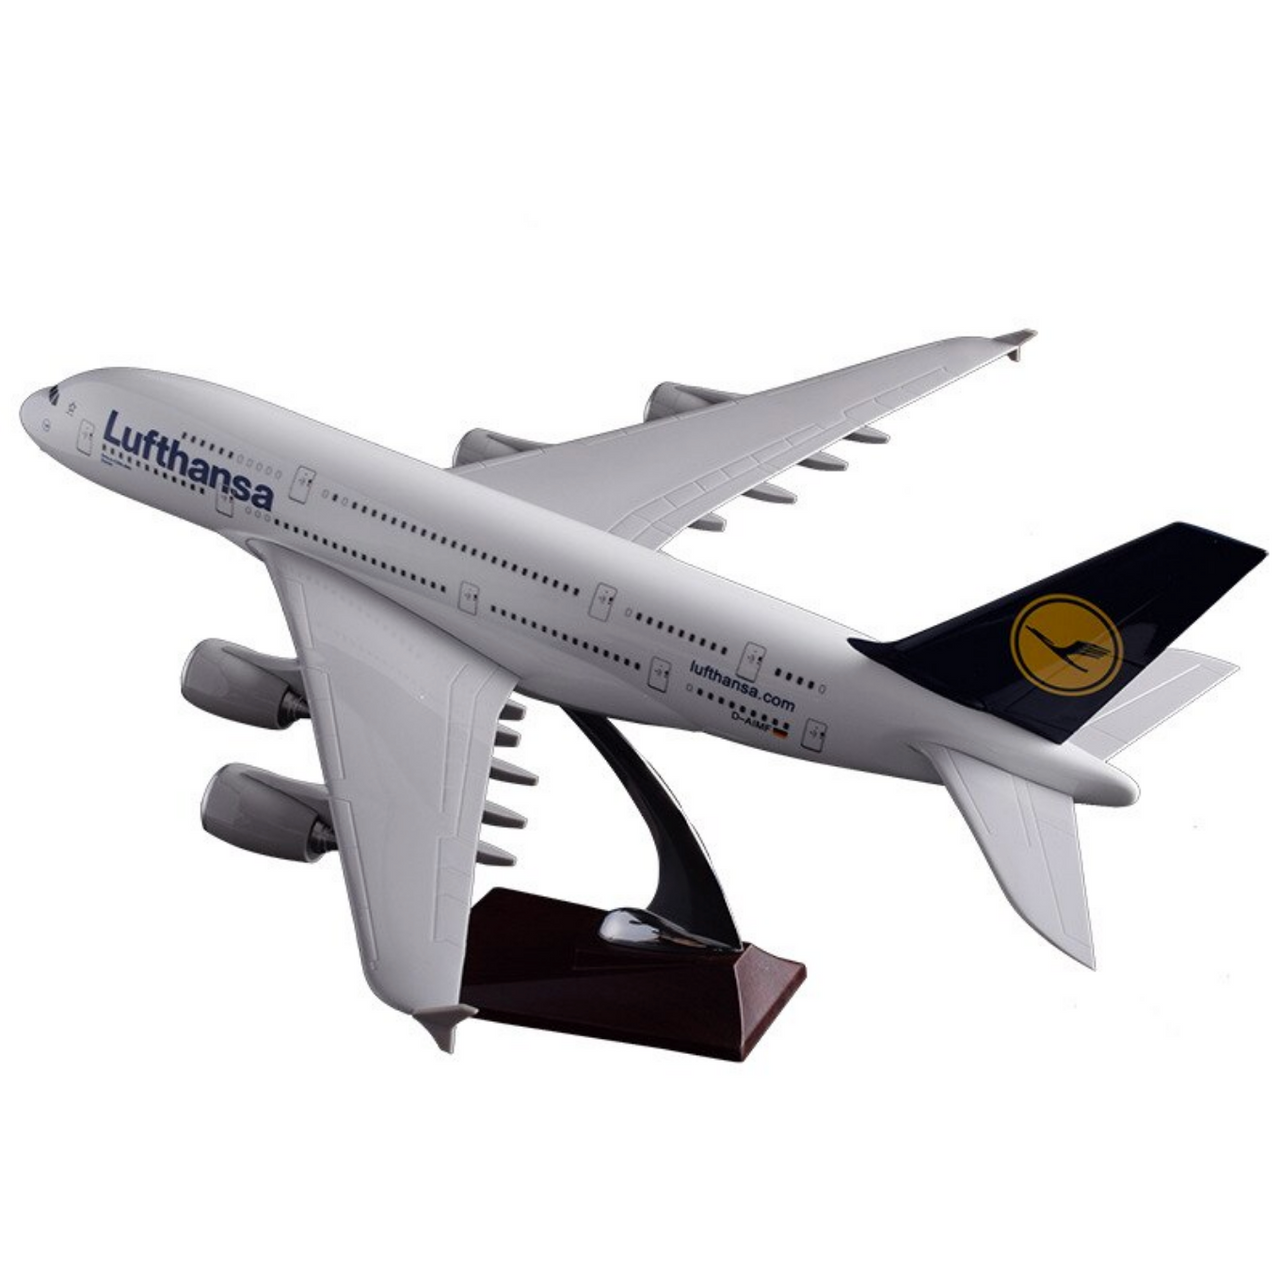 Lufthansa Airbus A380 Airplane Model (Handmade 45CM)